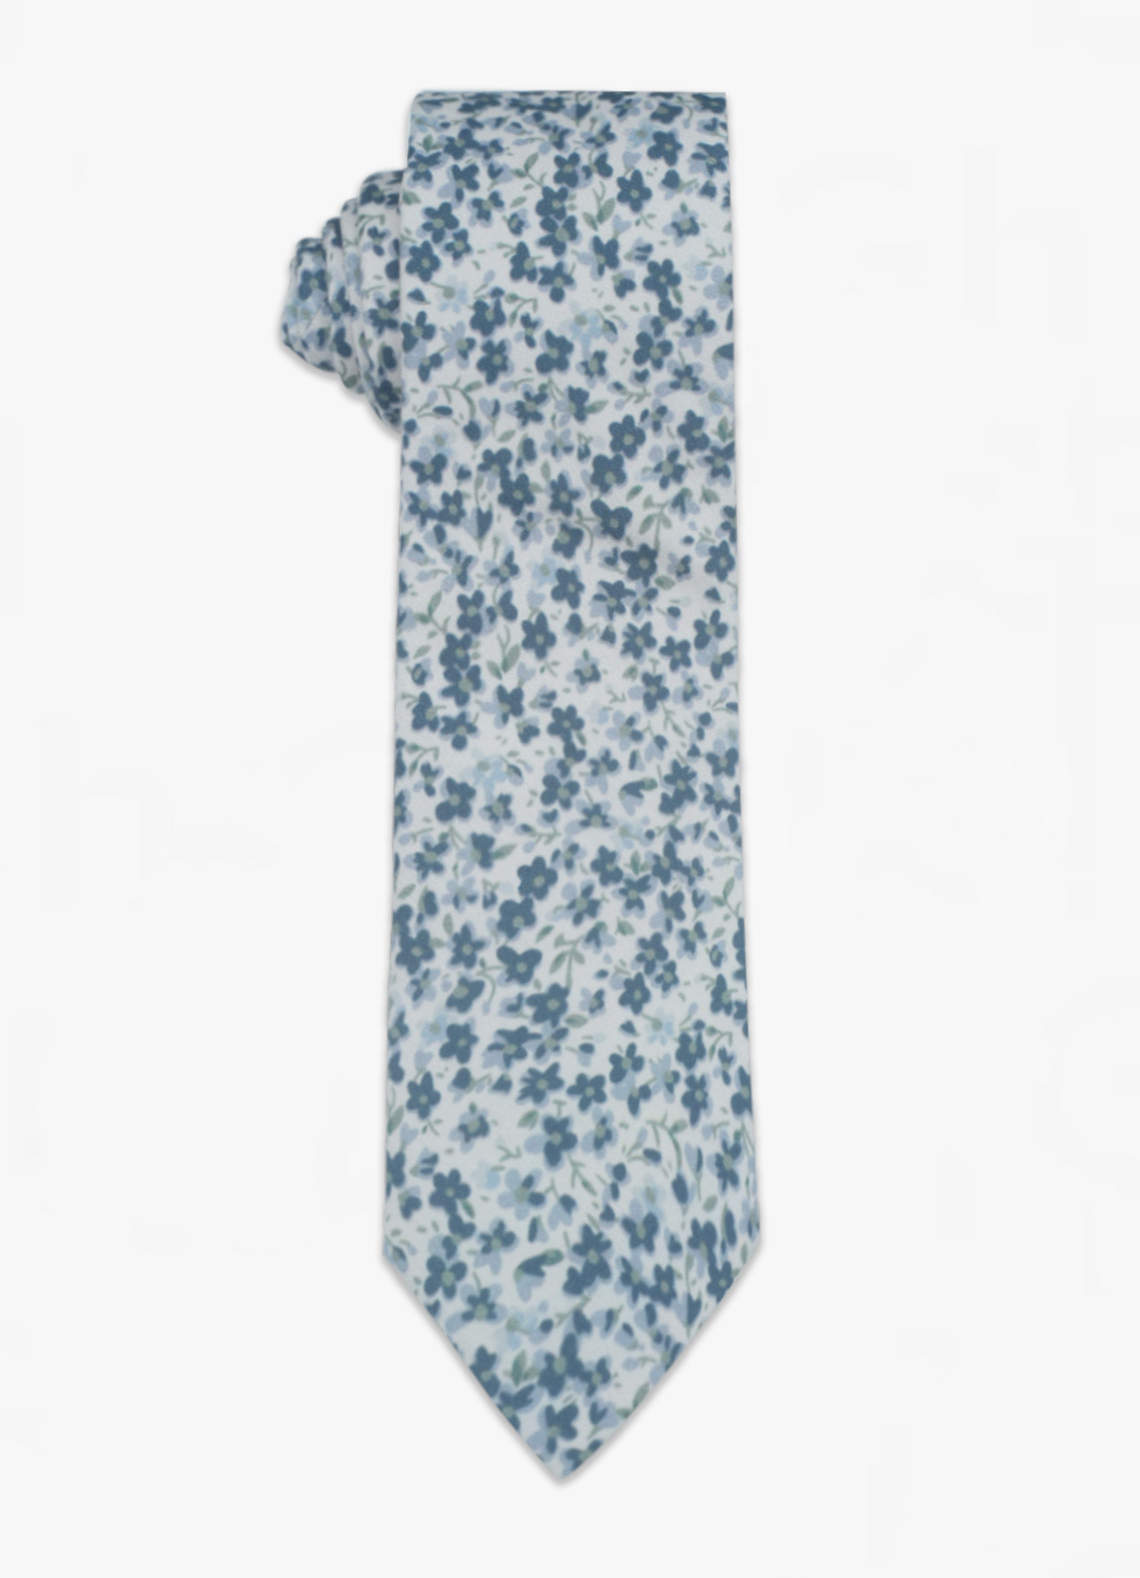 Ingenieurs stereo Troosteloos Gebloemde magere stropdas Accessoires voor bruidsjonkers | Azazie